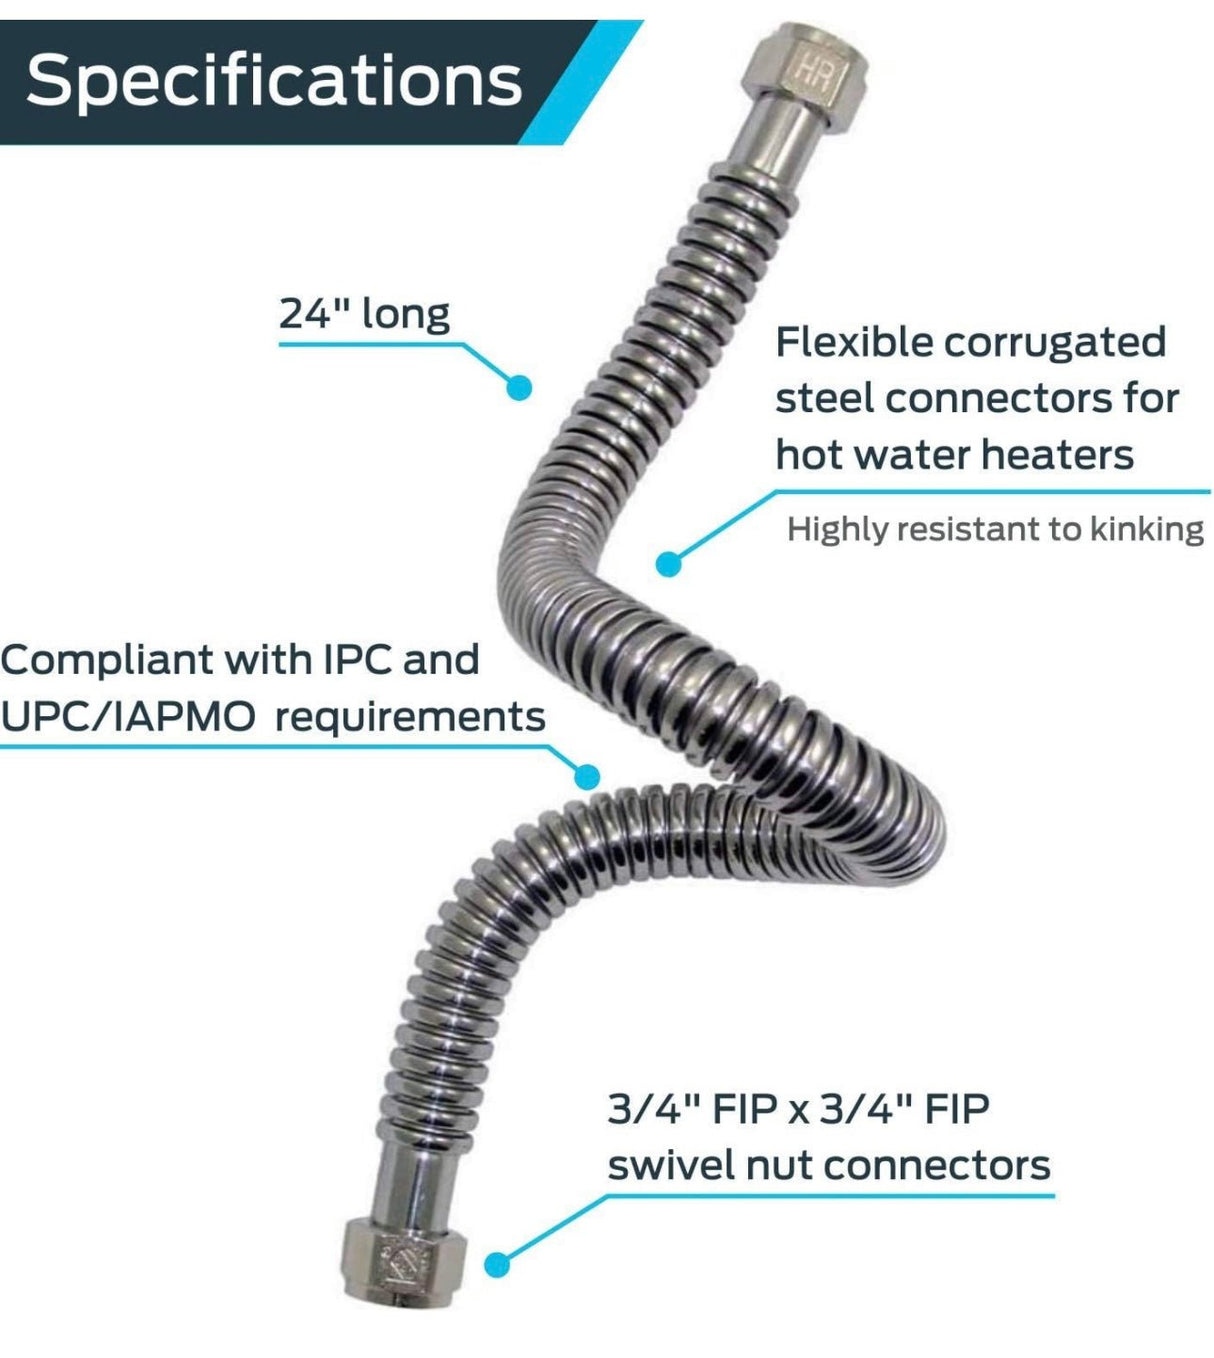 Conector de calentador de agua HoldRite QuickFlex de 3/4 pulgadas FIP x 3/4 pulgadas FIP x 24 pulgadas